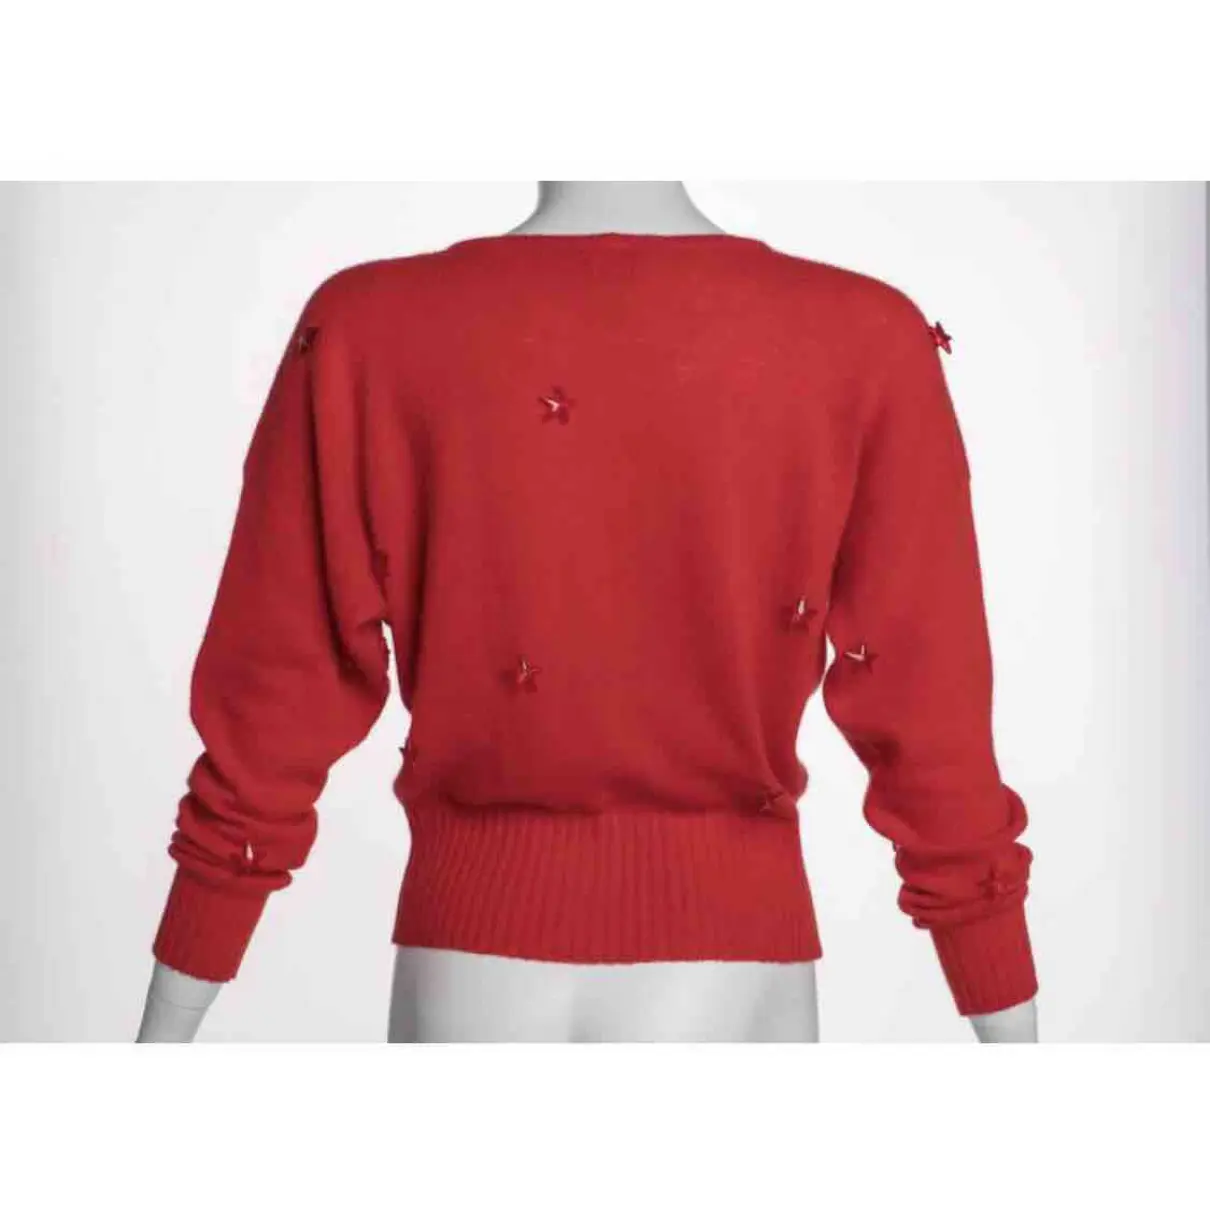 Buy Krizia Wool jumper online - Vintage